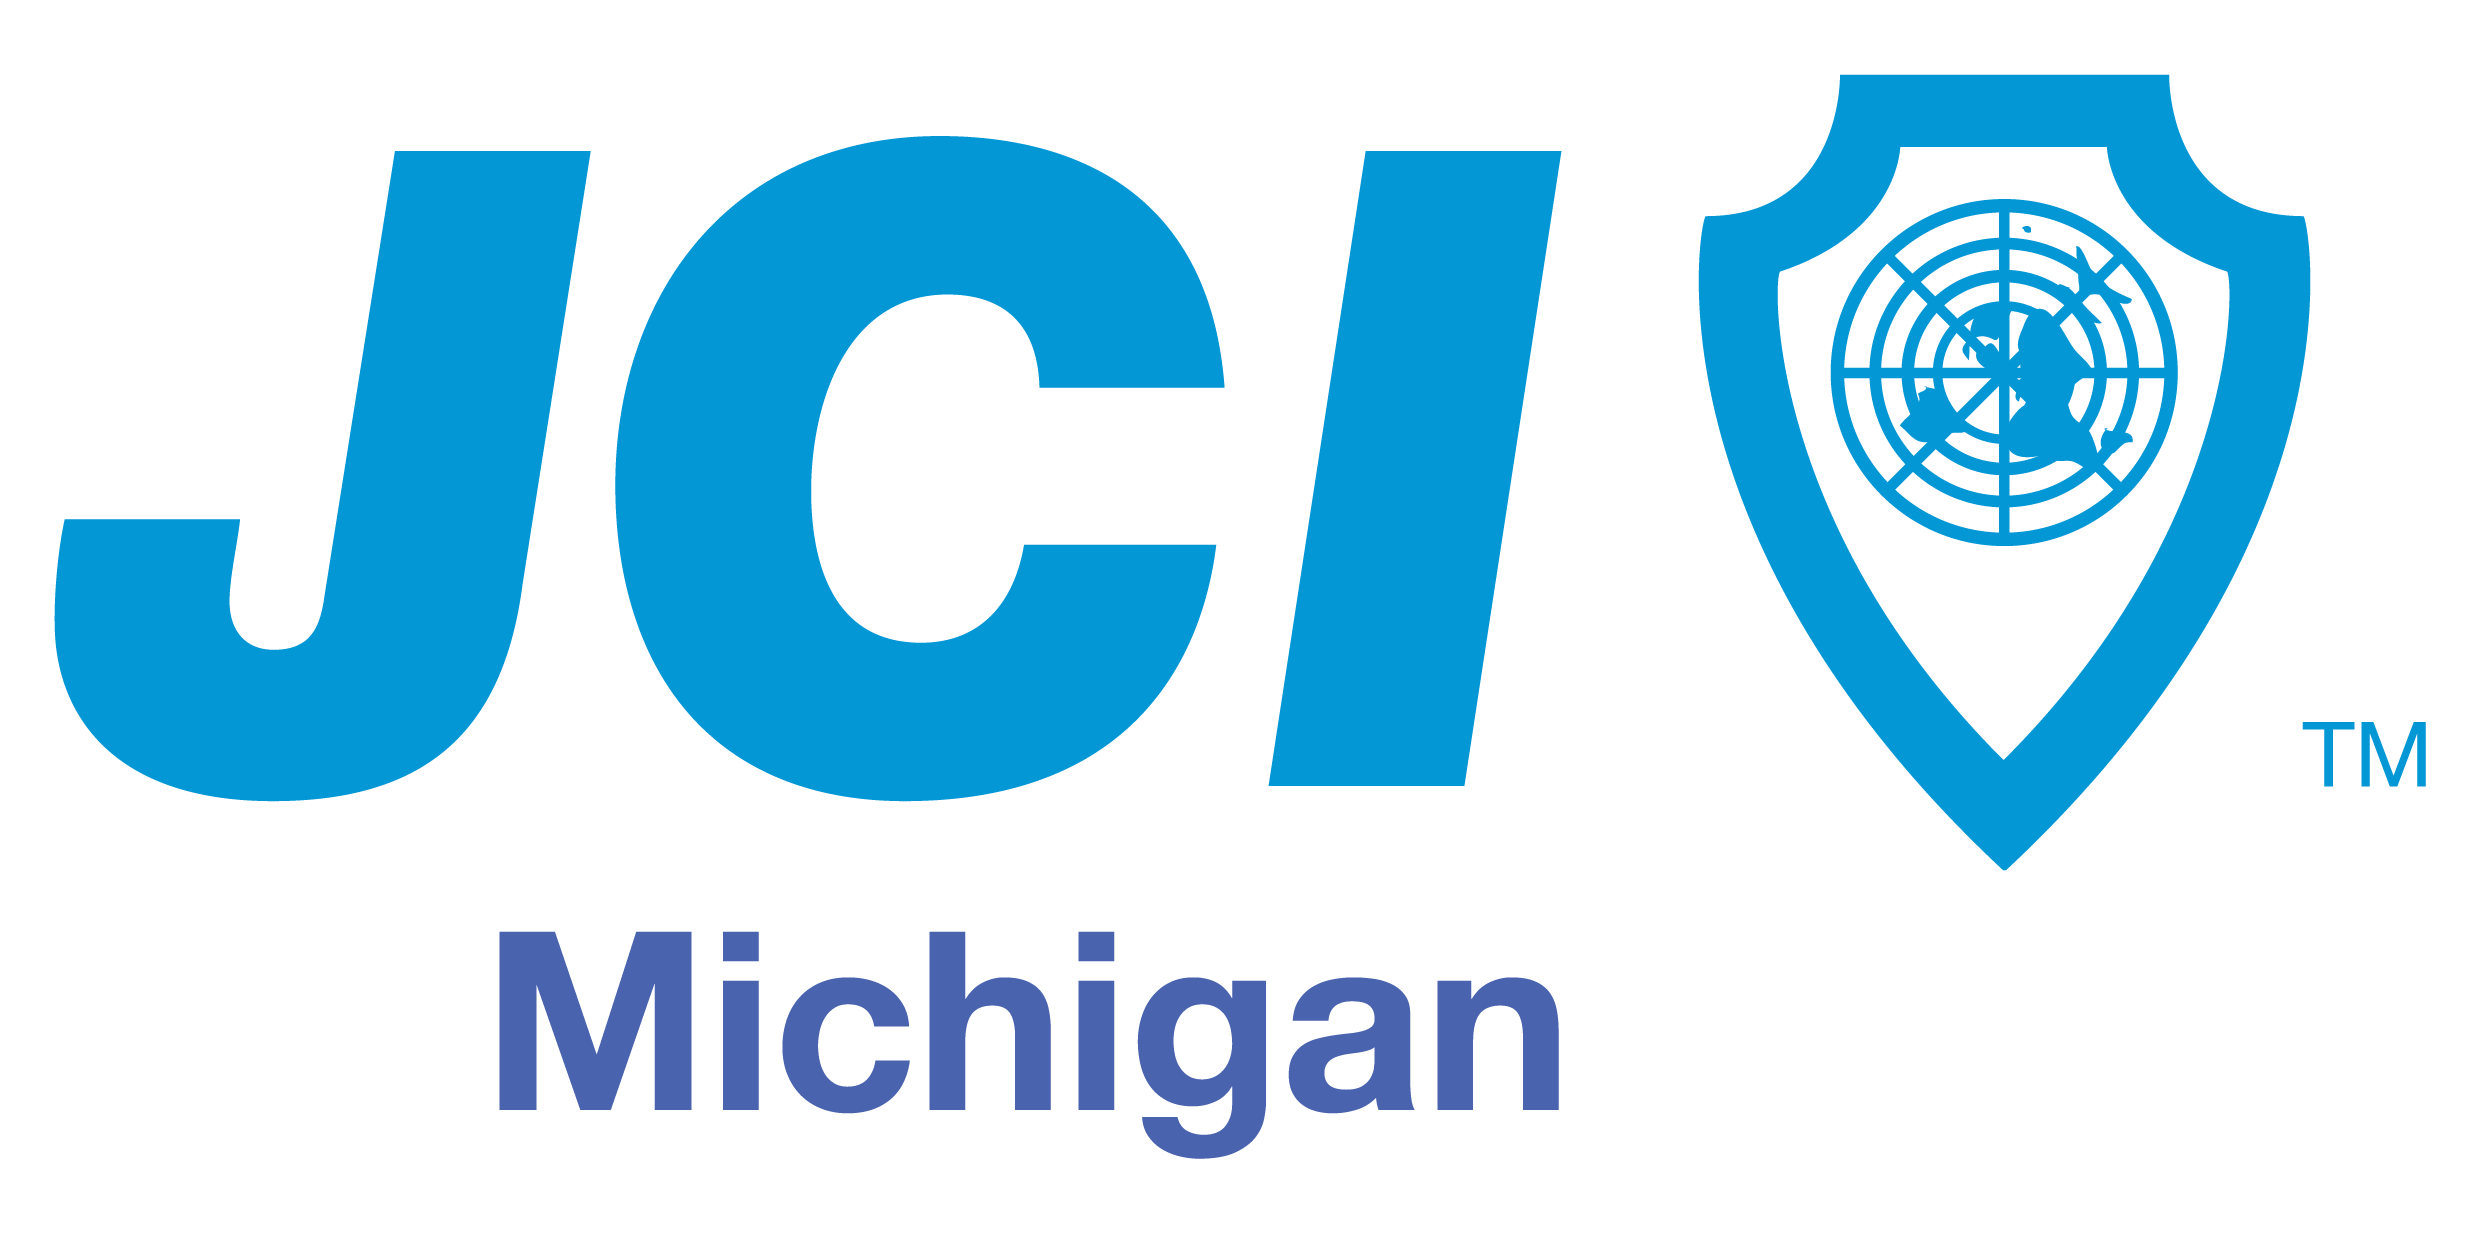 JCI Michigan